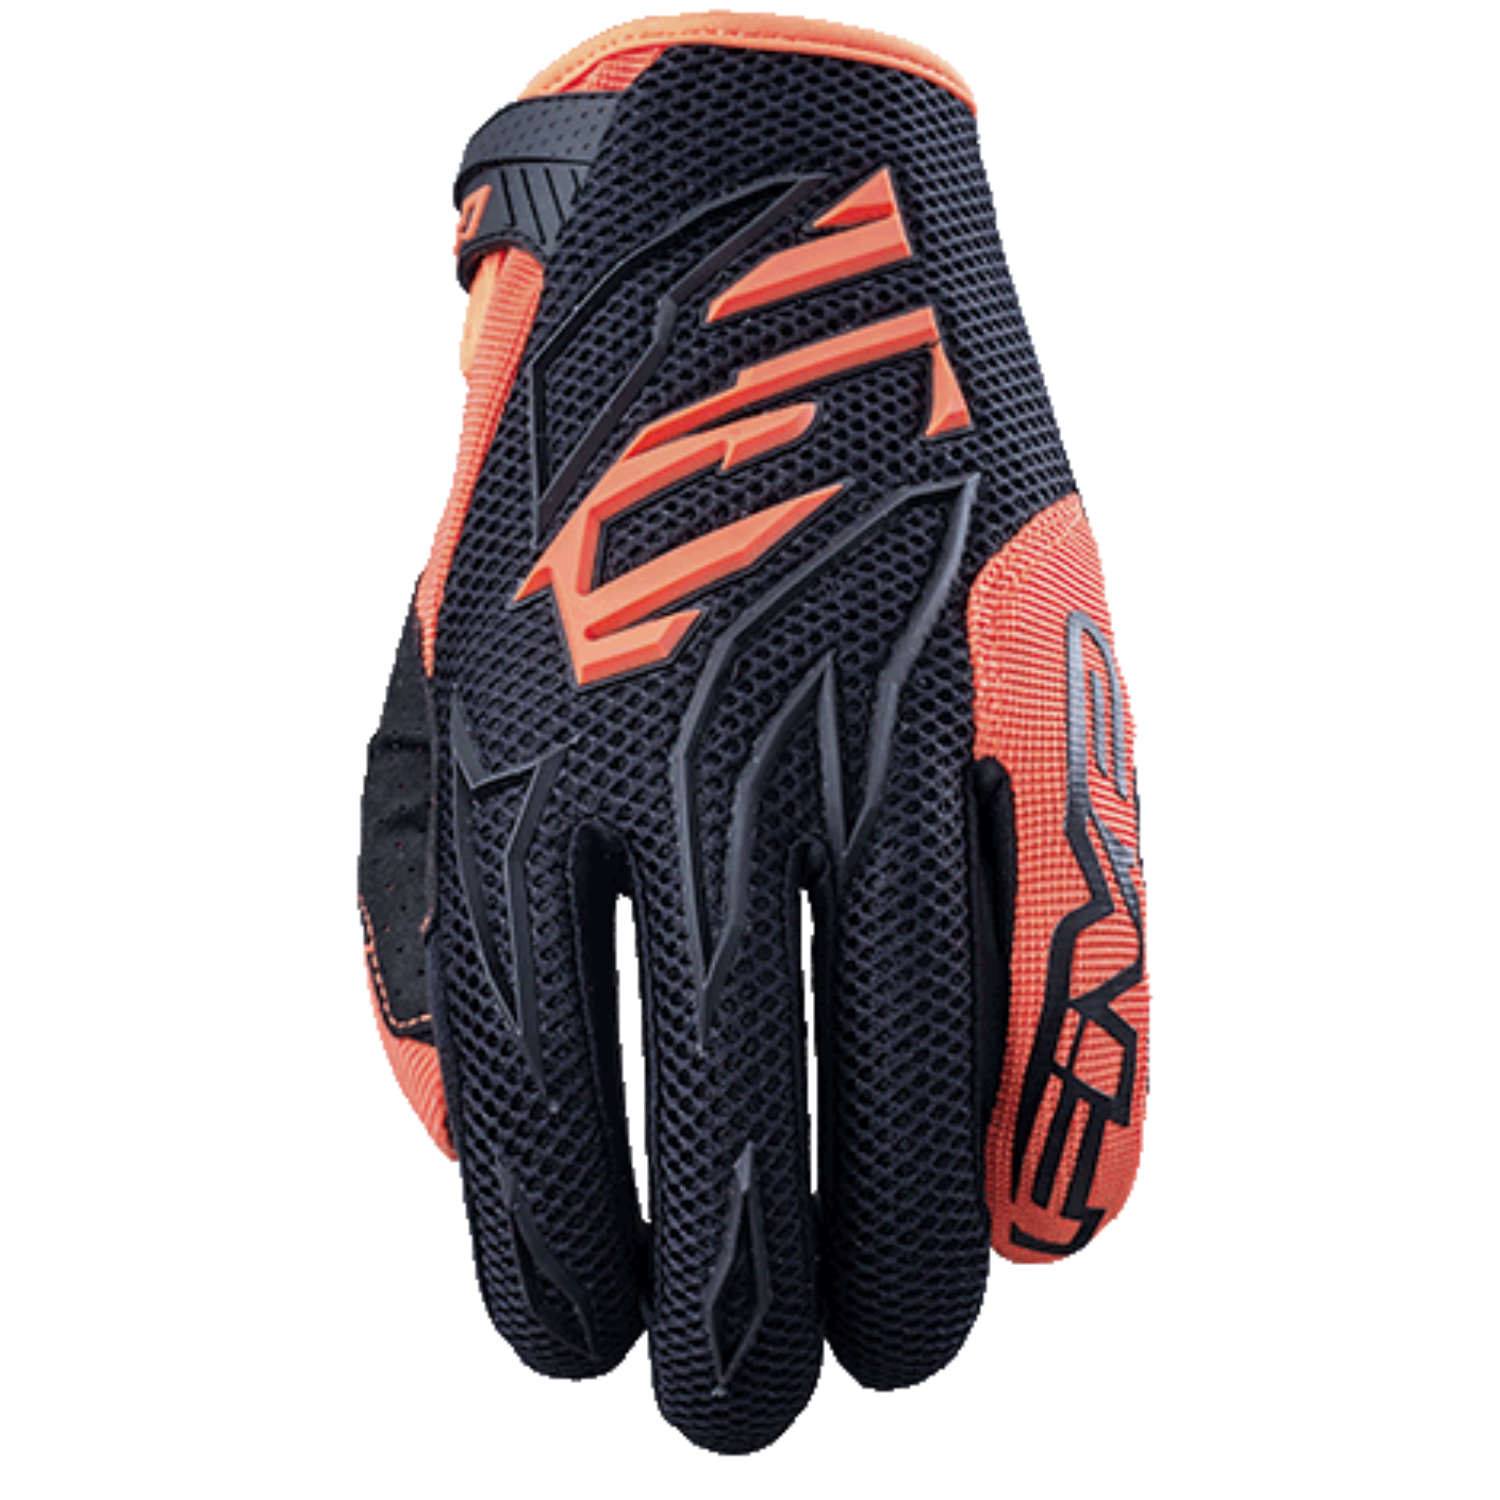 Five MXF3 Kid Gloves Black Orange Size L